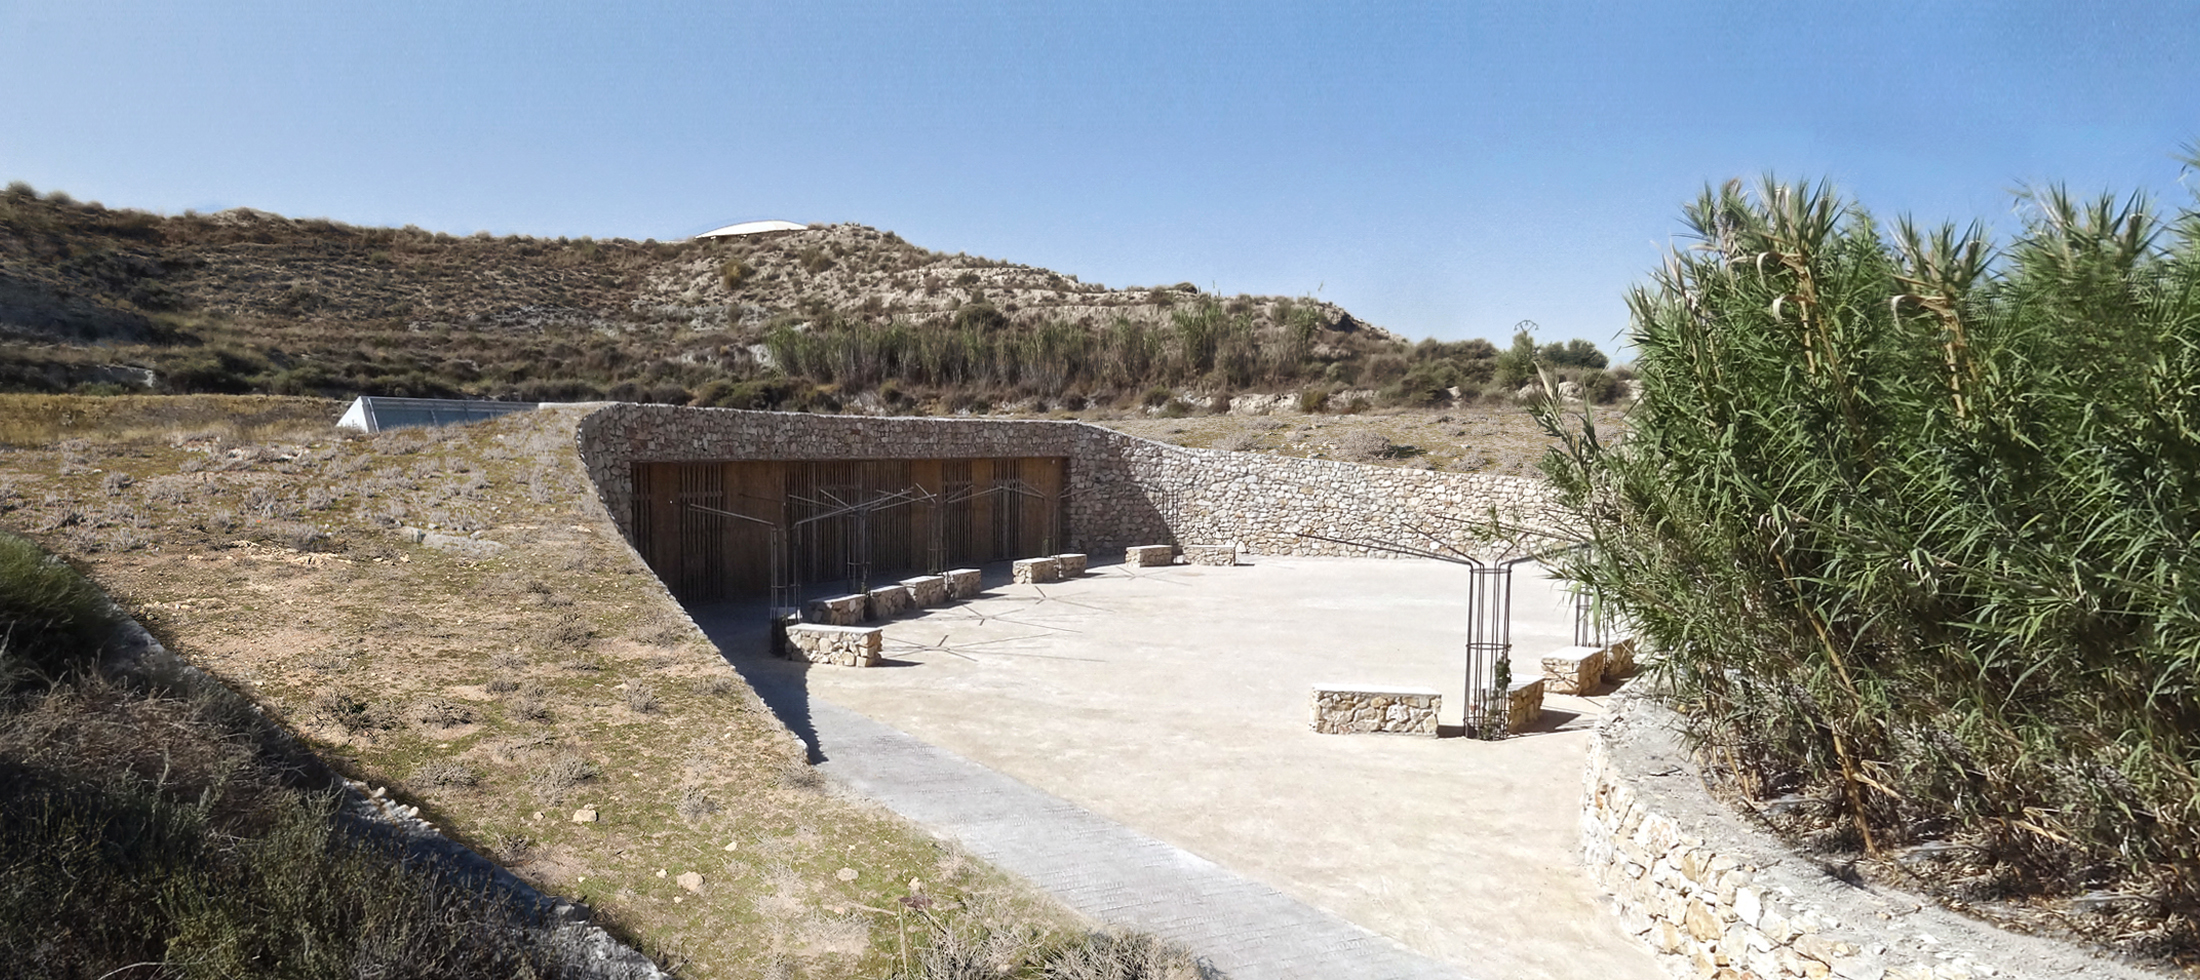 Adecuación paisajística centro de visitantes Necrópolis de Tútugi